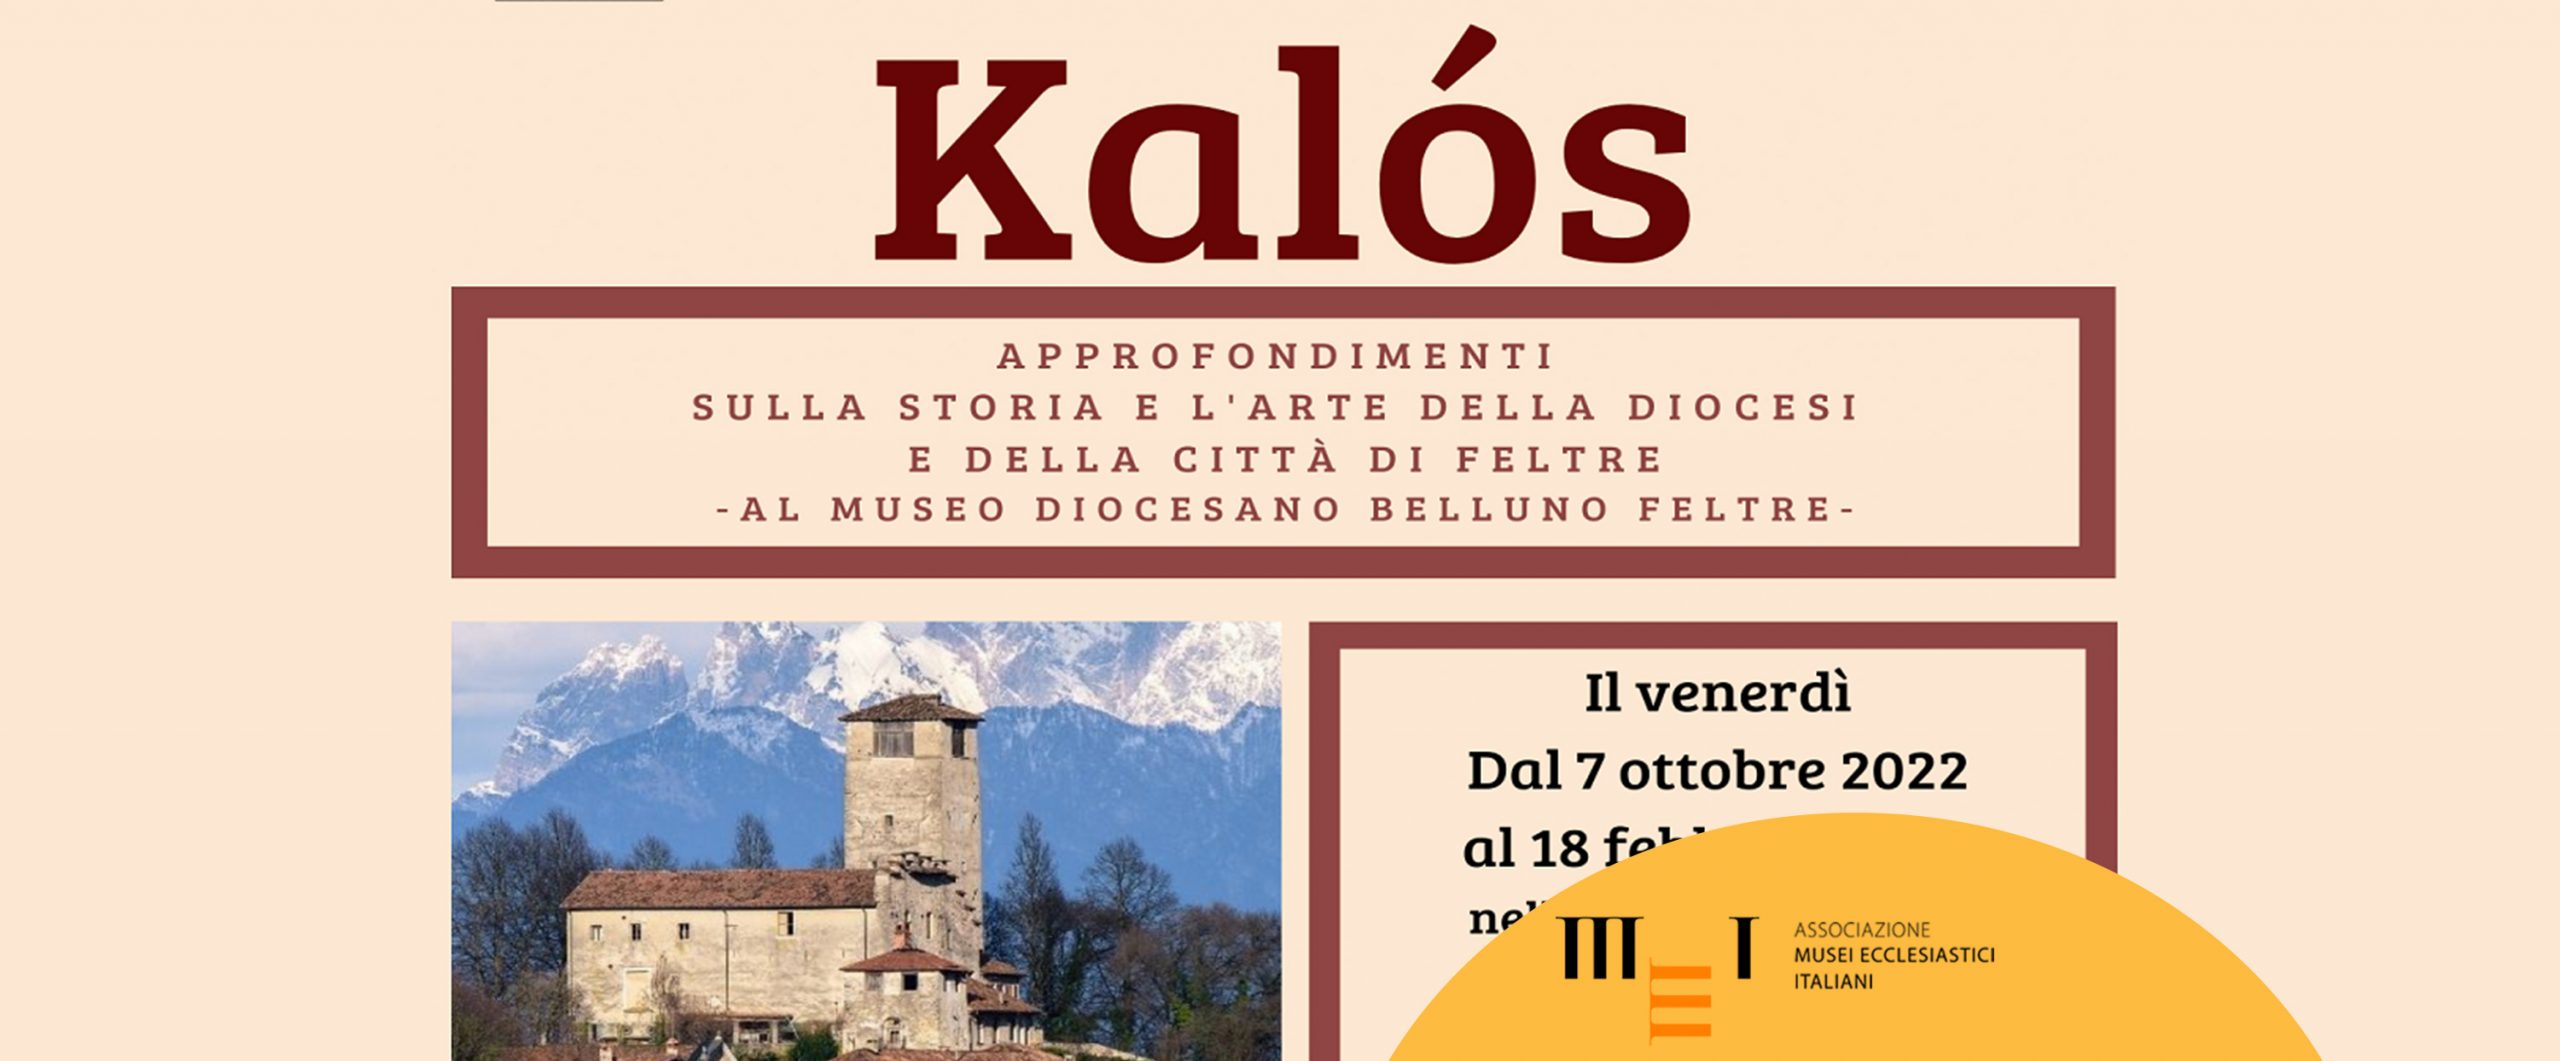 Kalós - Approfondimenti sulla storia e sull’arte della Diocesi e Città di Feltre. Dal 7 ottobre al 18 febbraio